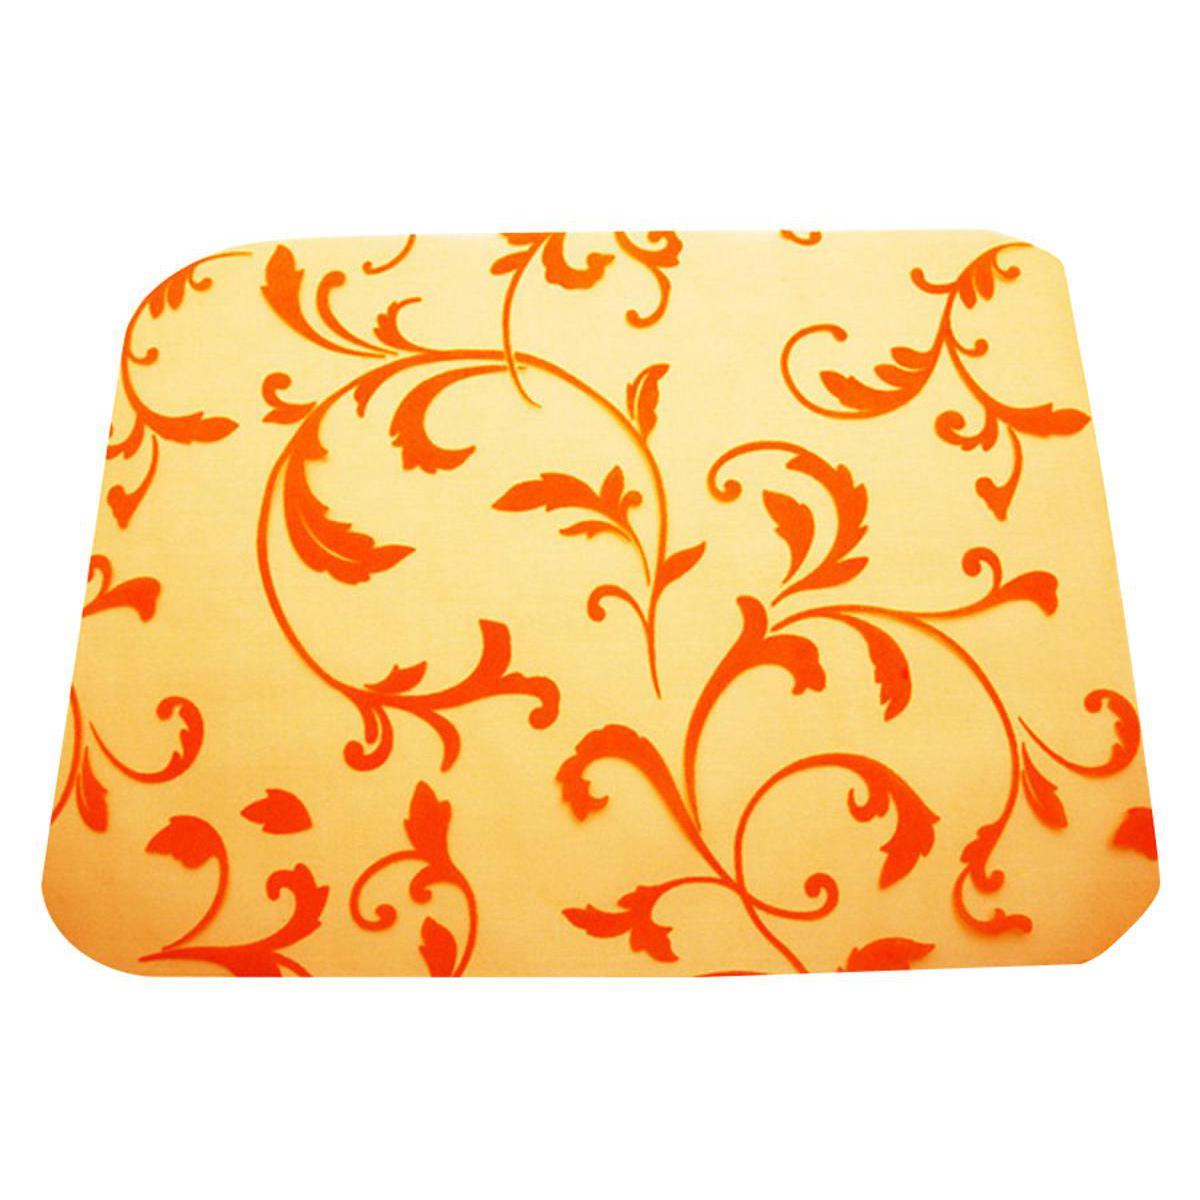 Lot de 4 sets de table à motifs arabesque - Organza - 30 x 40 cm - Orange